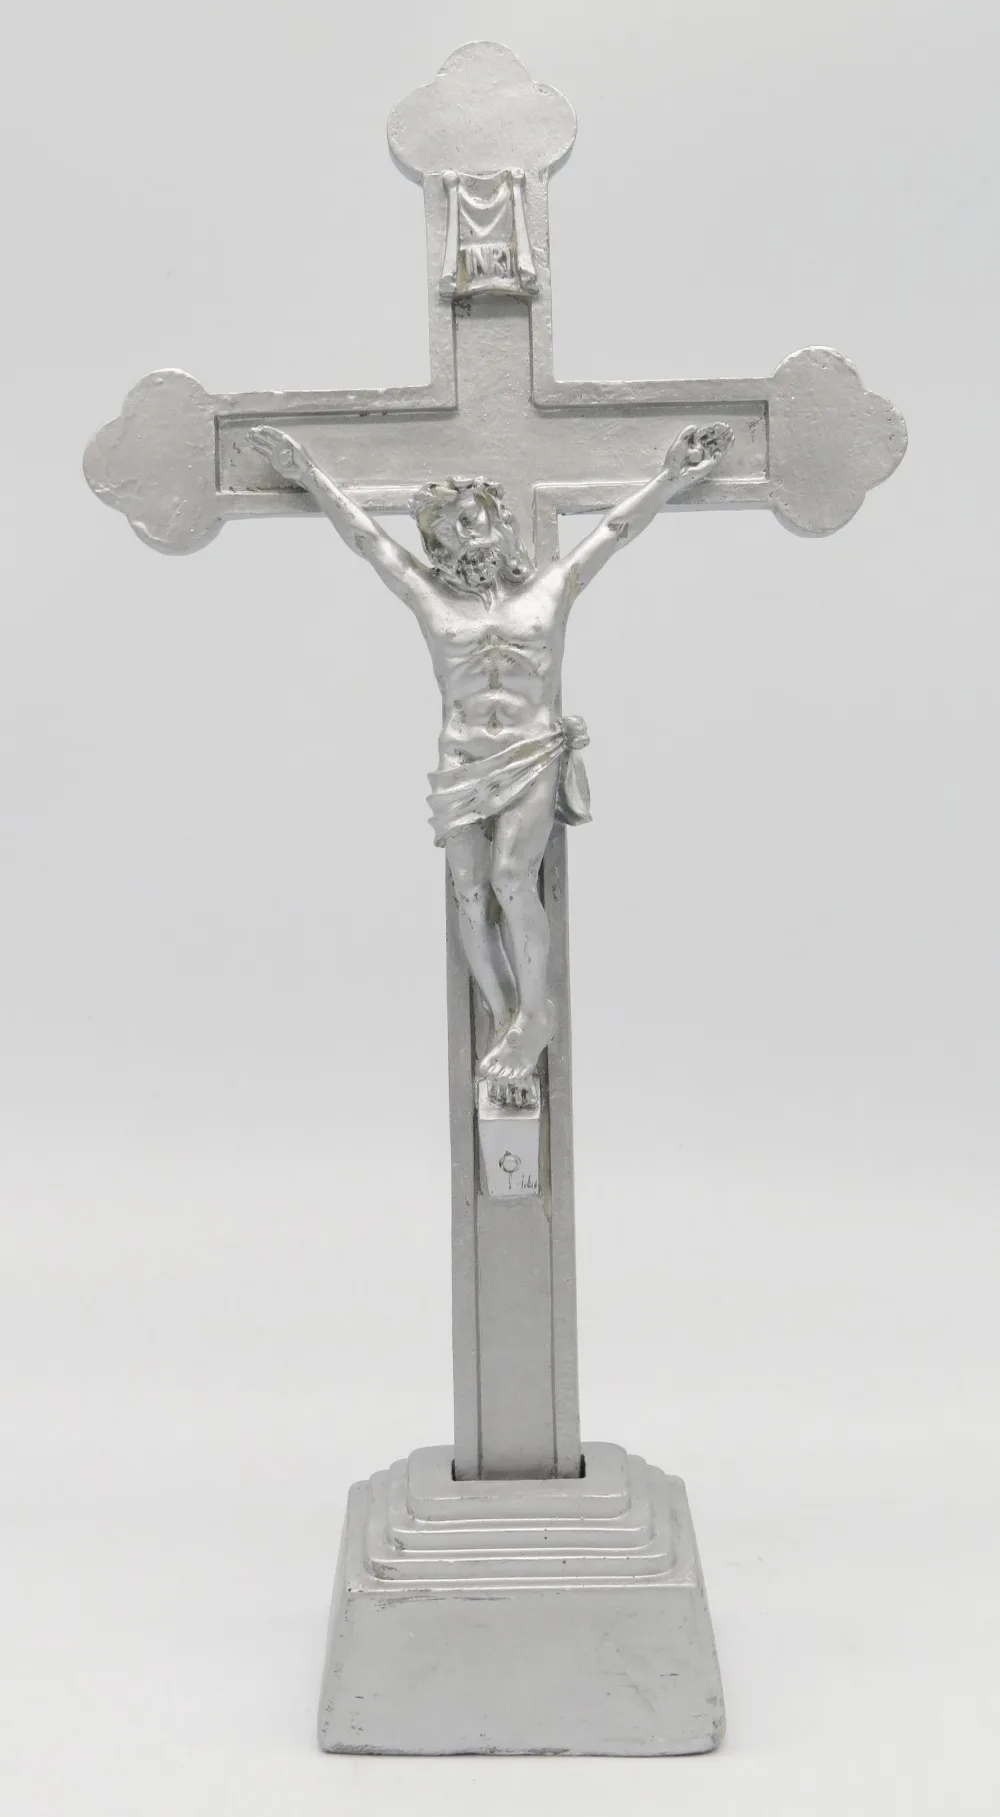 12 дюймов смолы Крест Стенд с распятье религиозное фигура Крестик с распятием Статуэтка SY-1208G/S